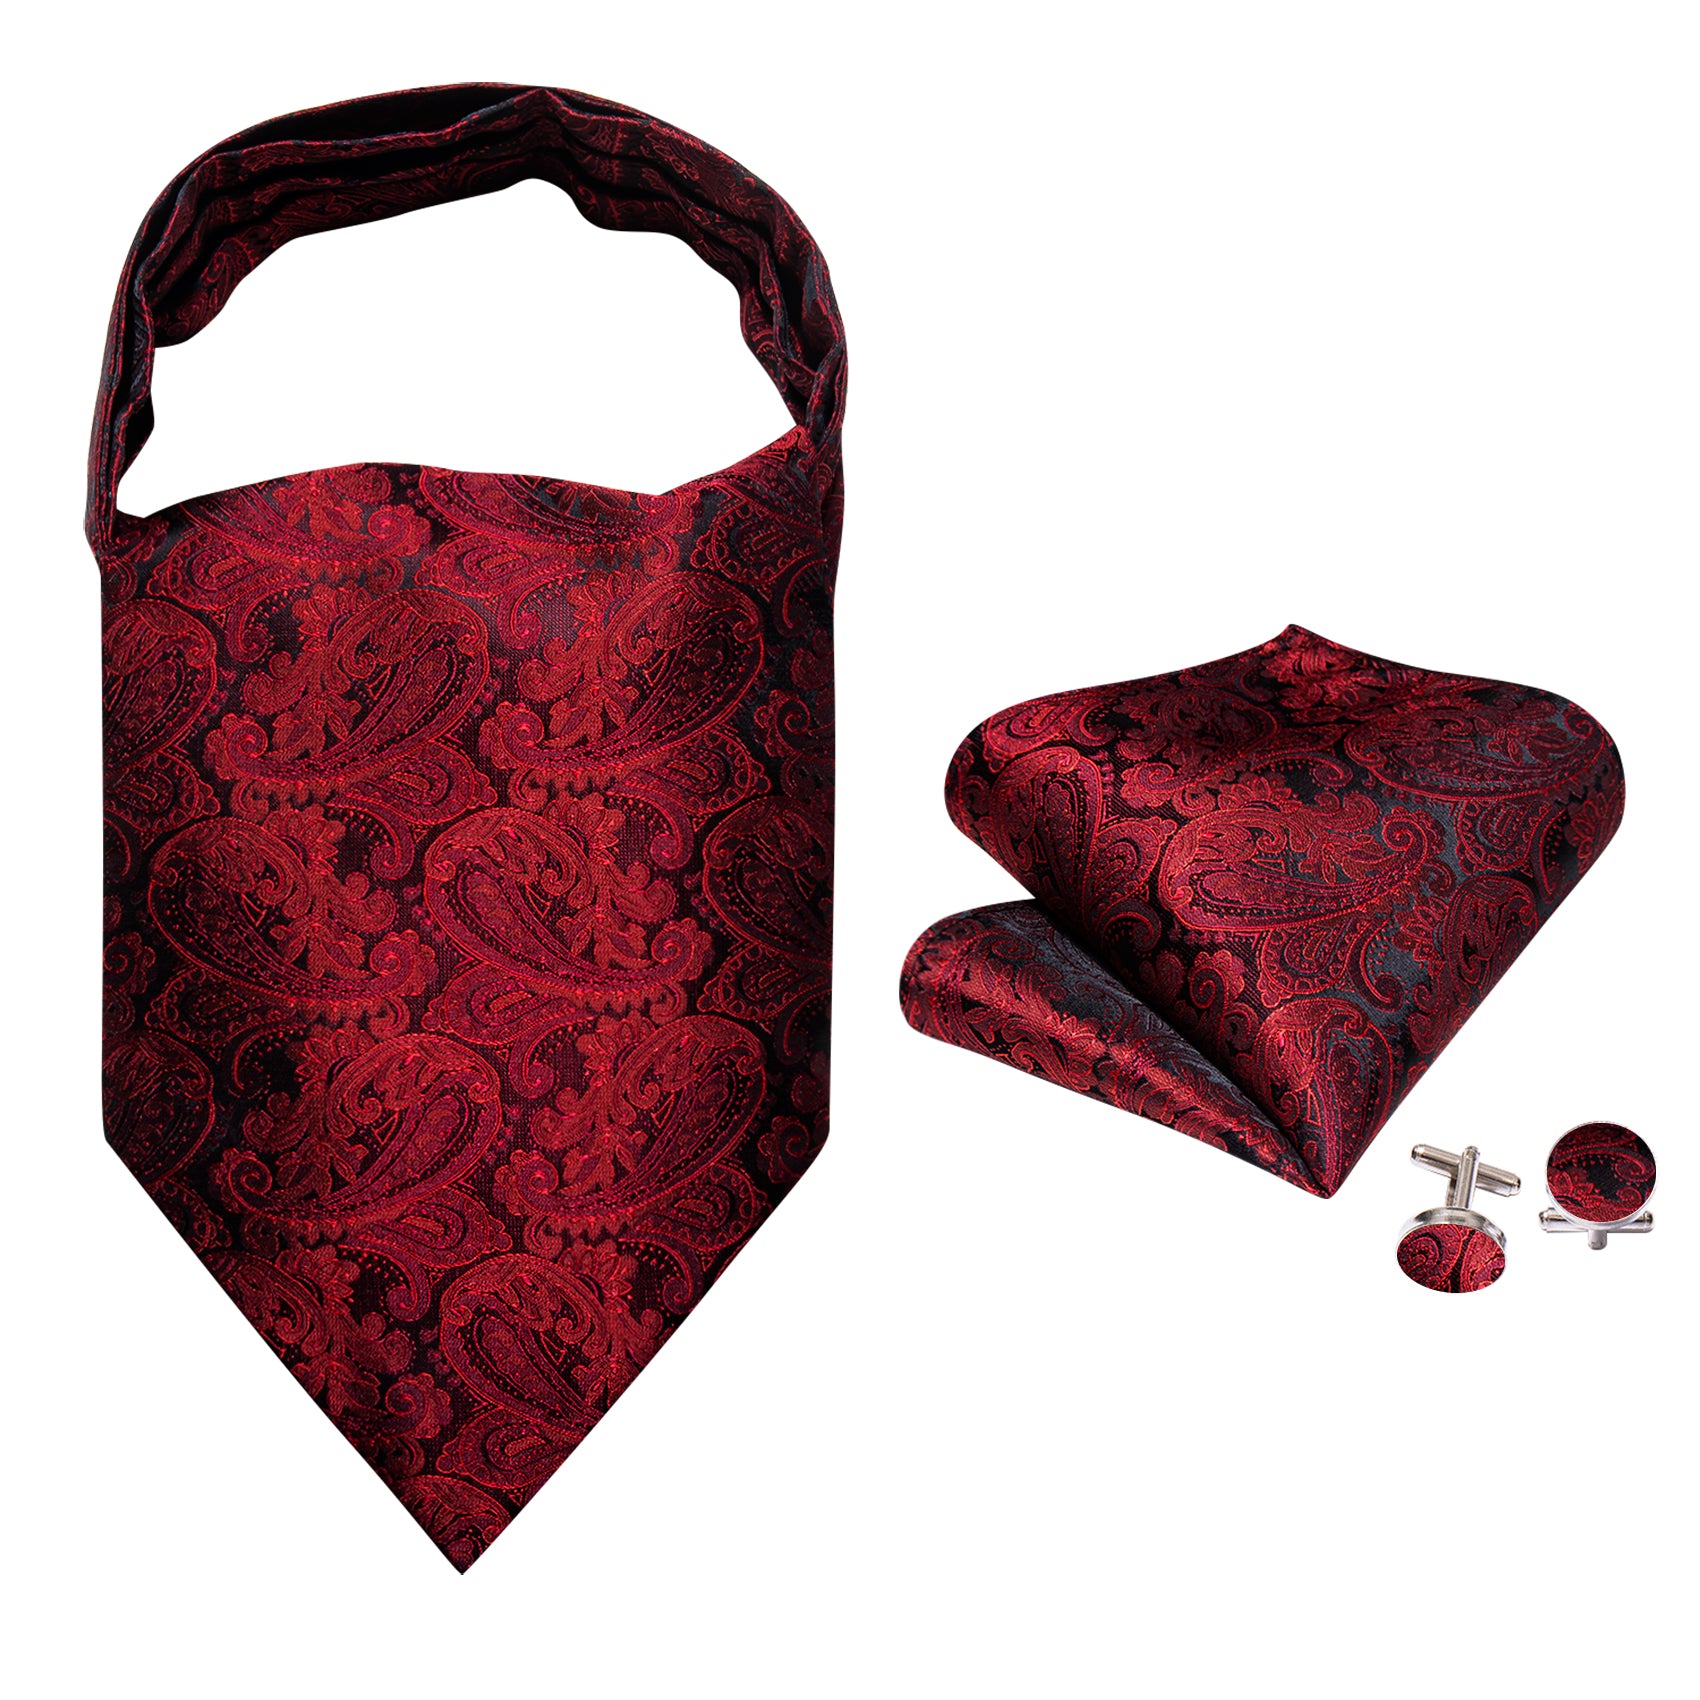 Shining Red Paisley Ascot Handkerchief Cufflinks Set